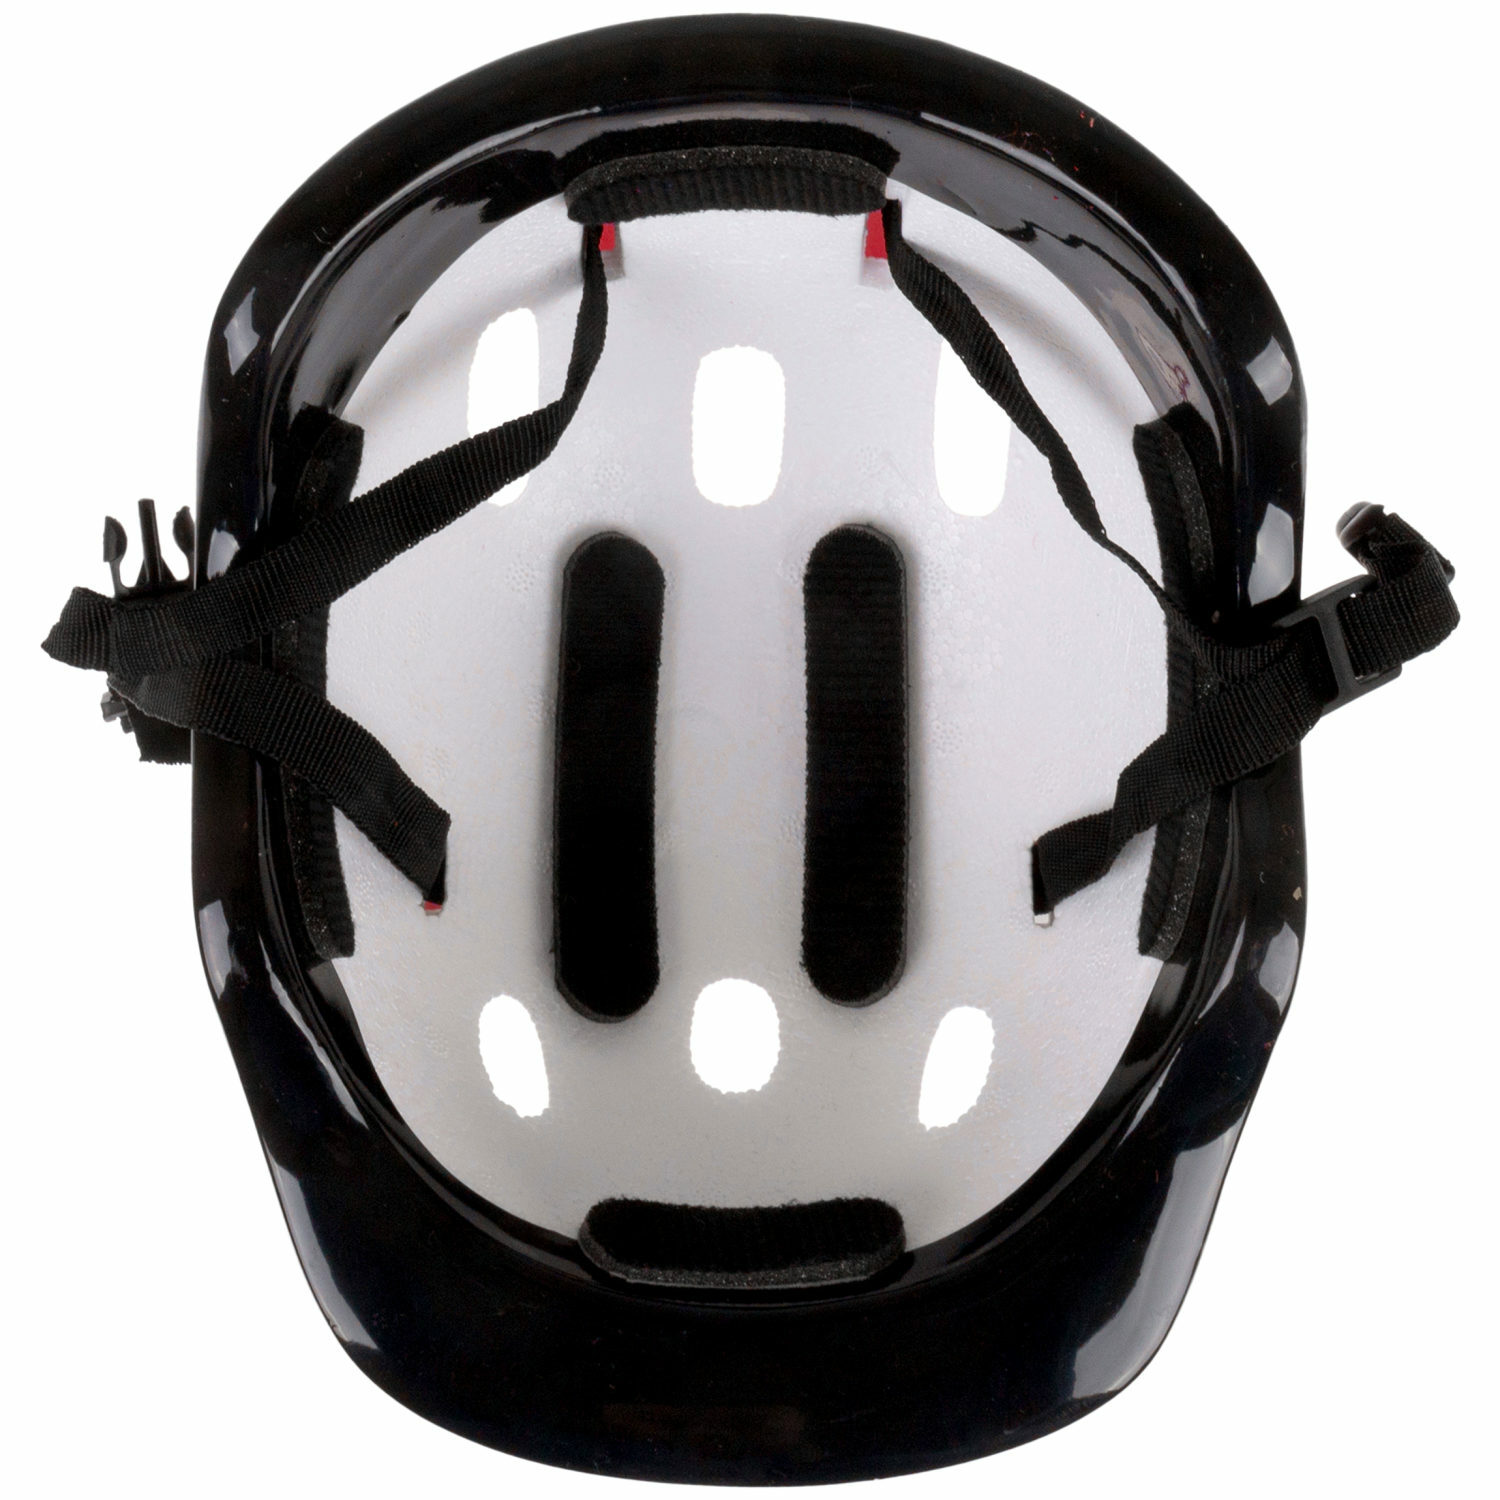 Ролики Navigator детские раздвижные 30 - 33 размер с защитой и шлемом красный - фото 14